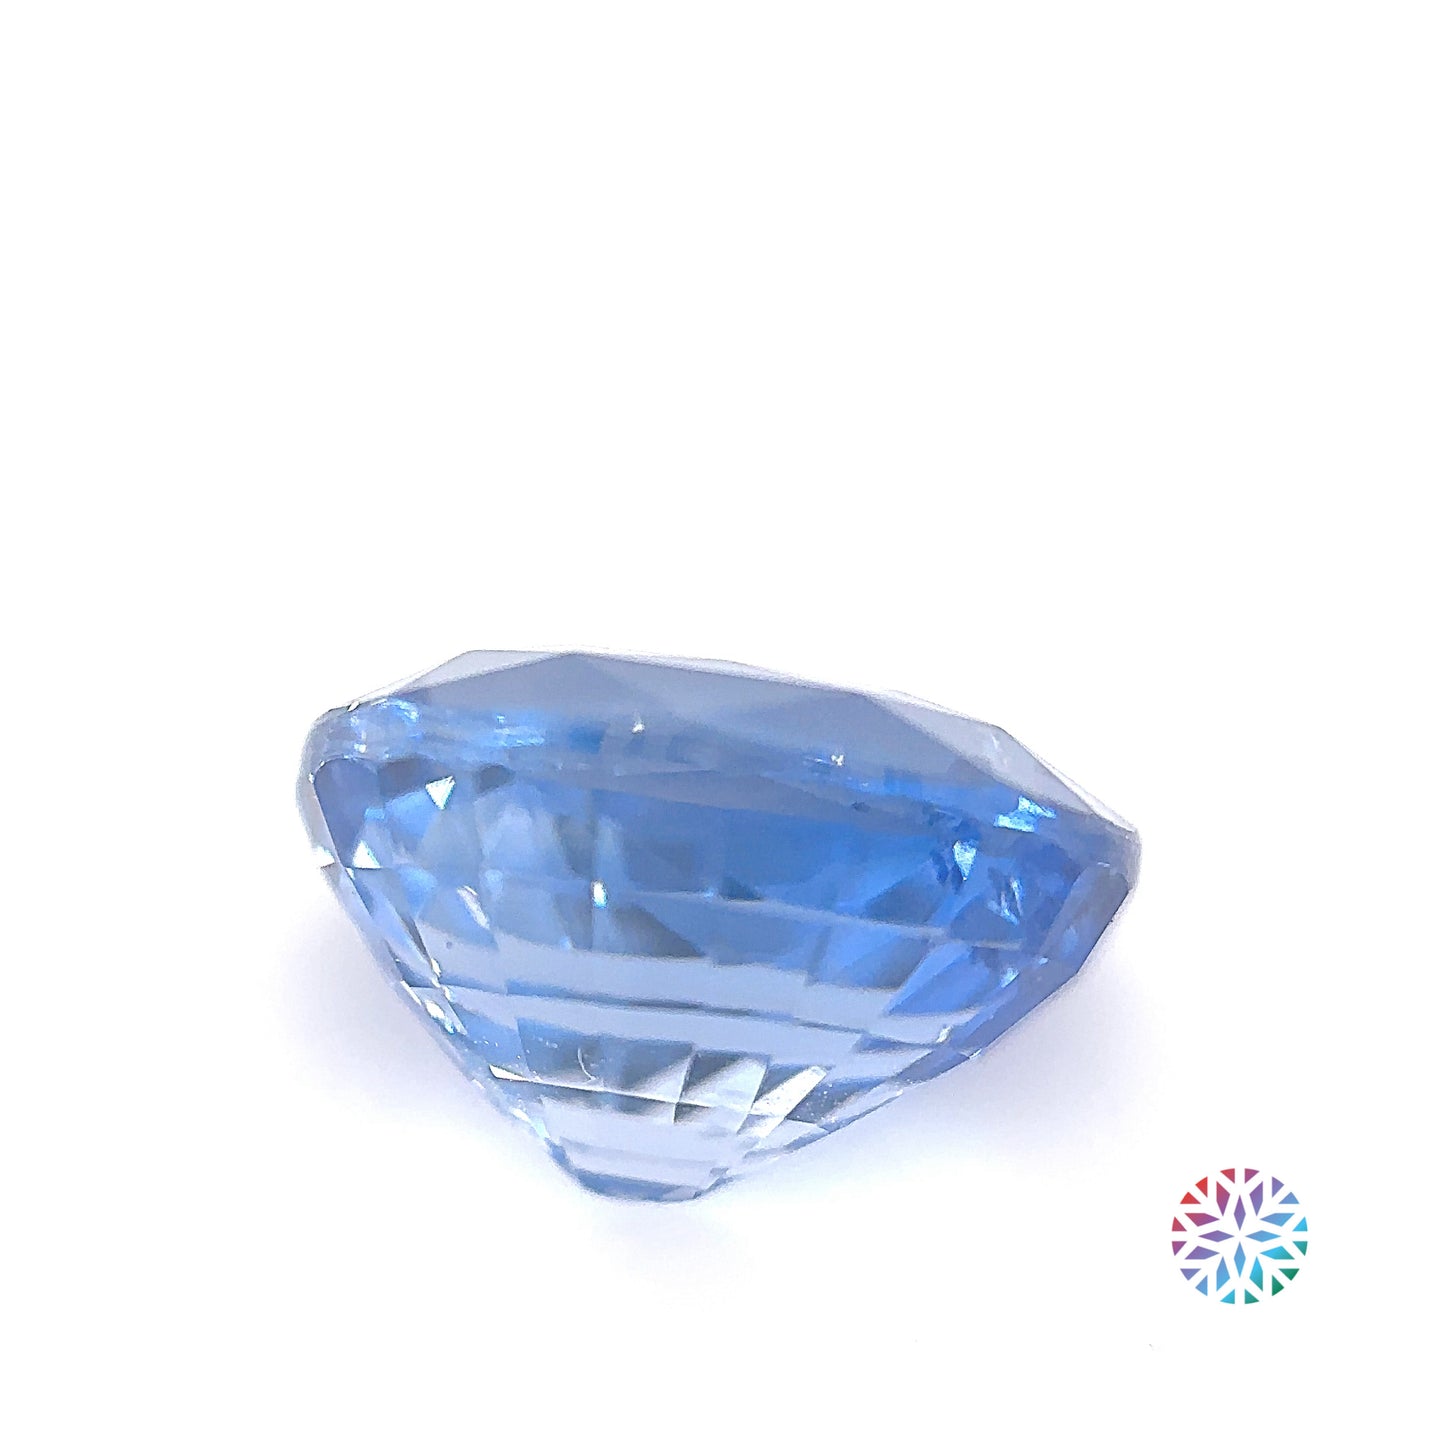 Blue Sapphire- Oval, 4.53ct, 10.1 x 8.5 x 6.3mm